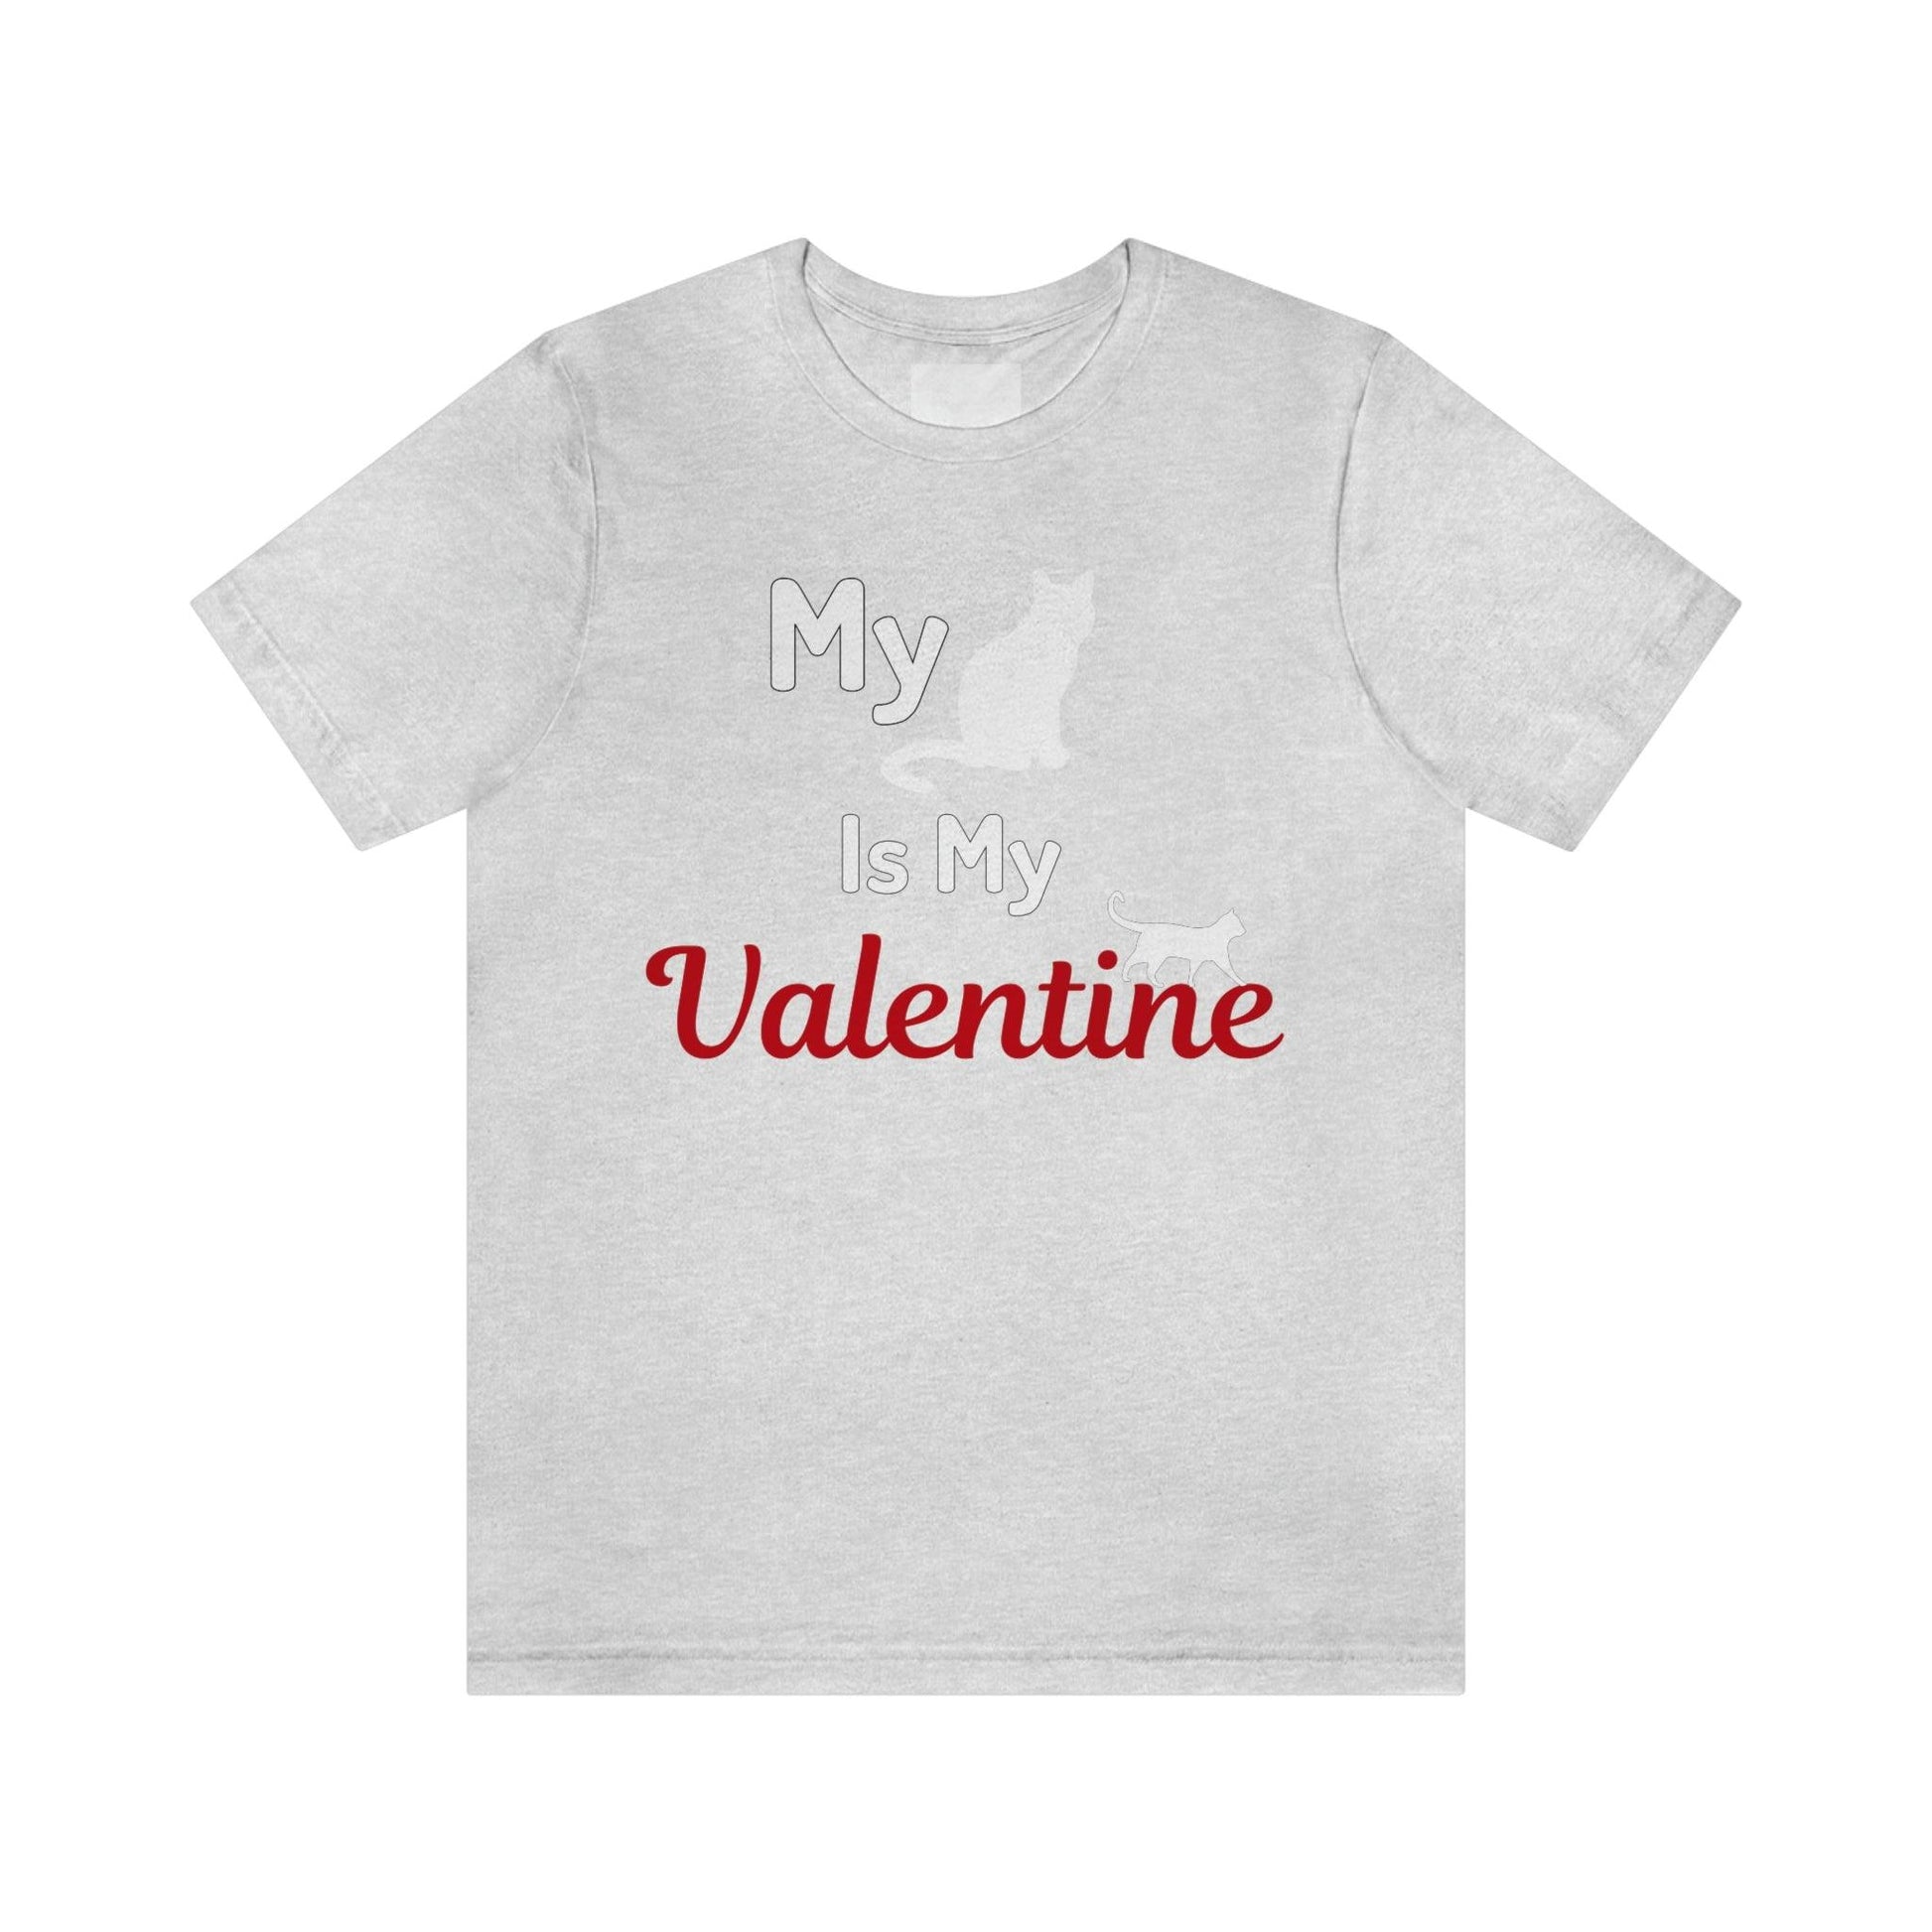 My Cat is My Valentine, Pet lover Valentine shirt - Cute cat lover shirt - gift for cat lovers - Giftsmojo